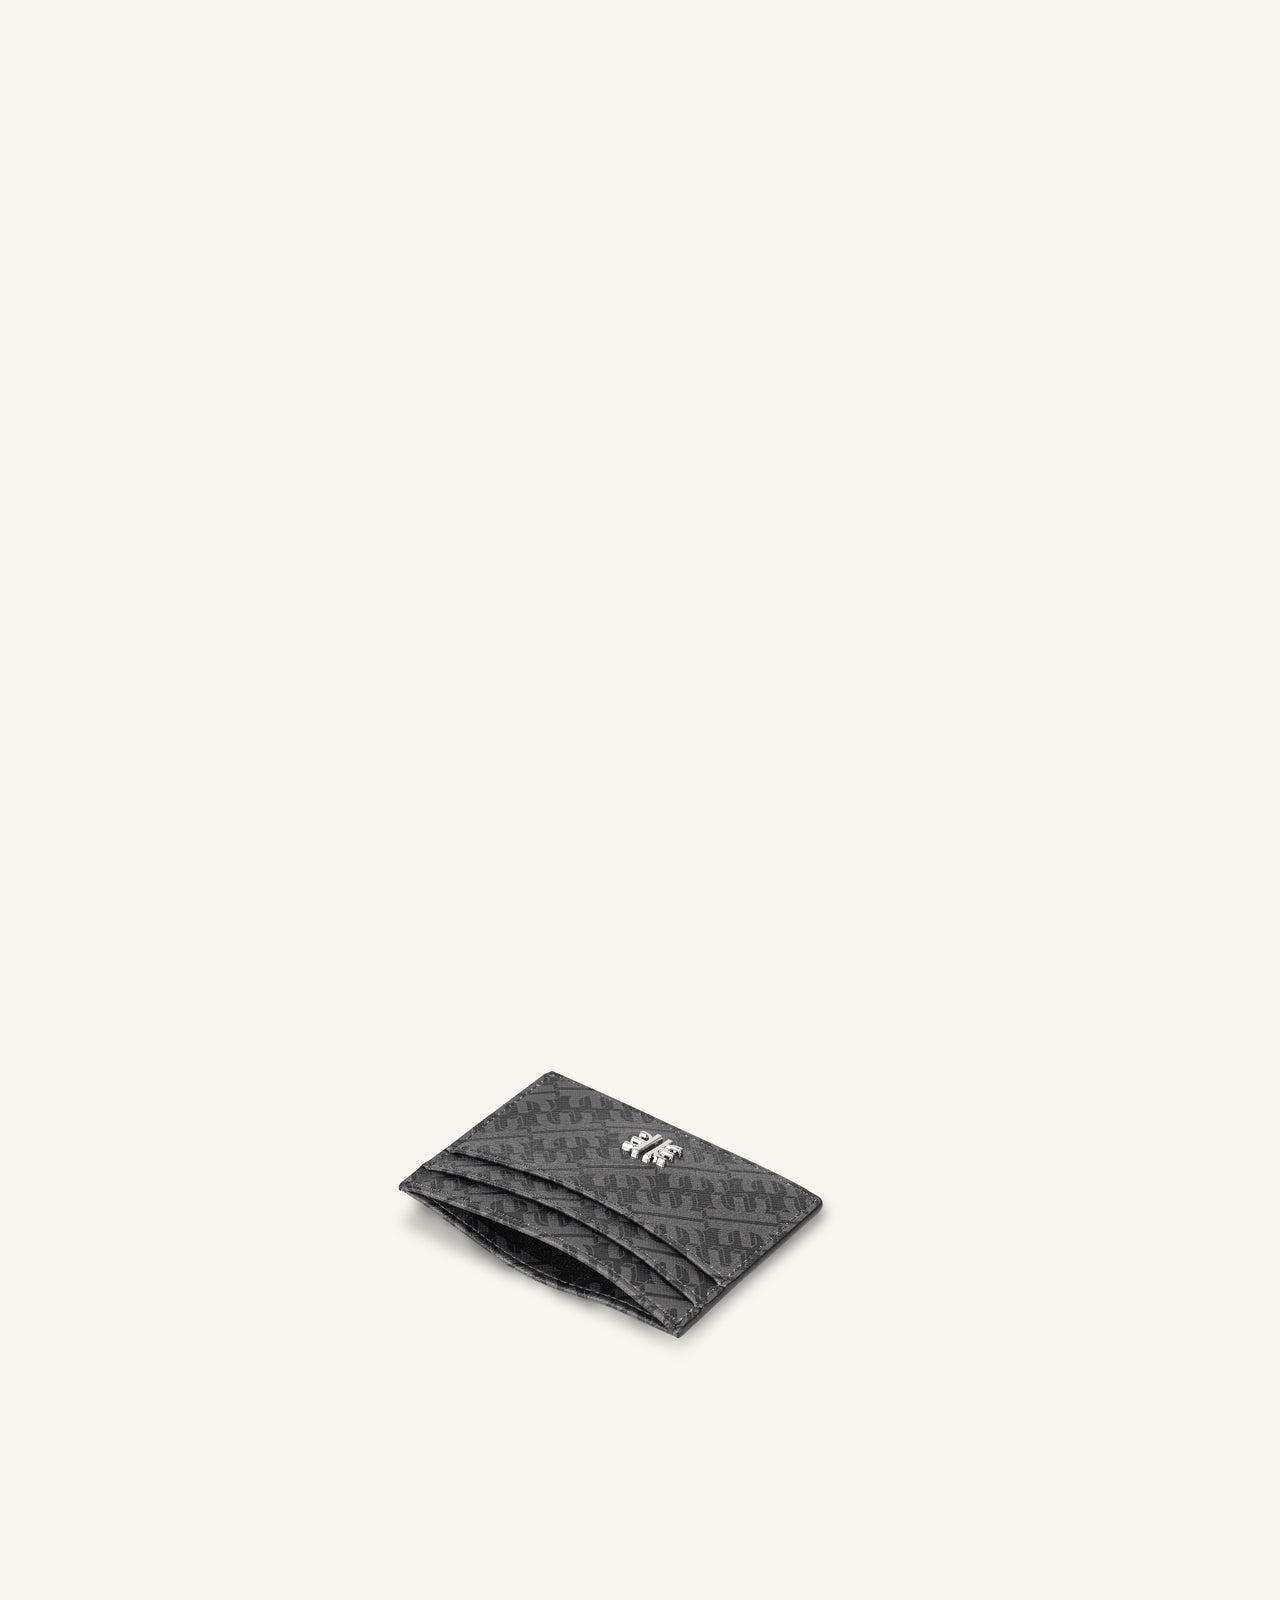 FEI Card Holder - Iron Black